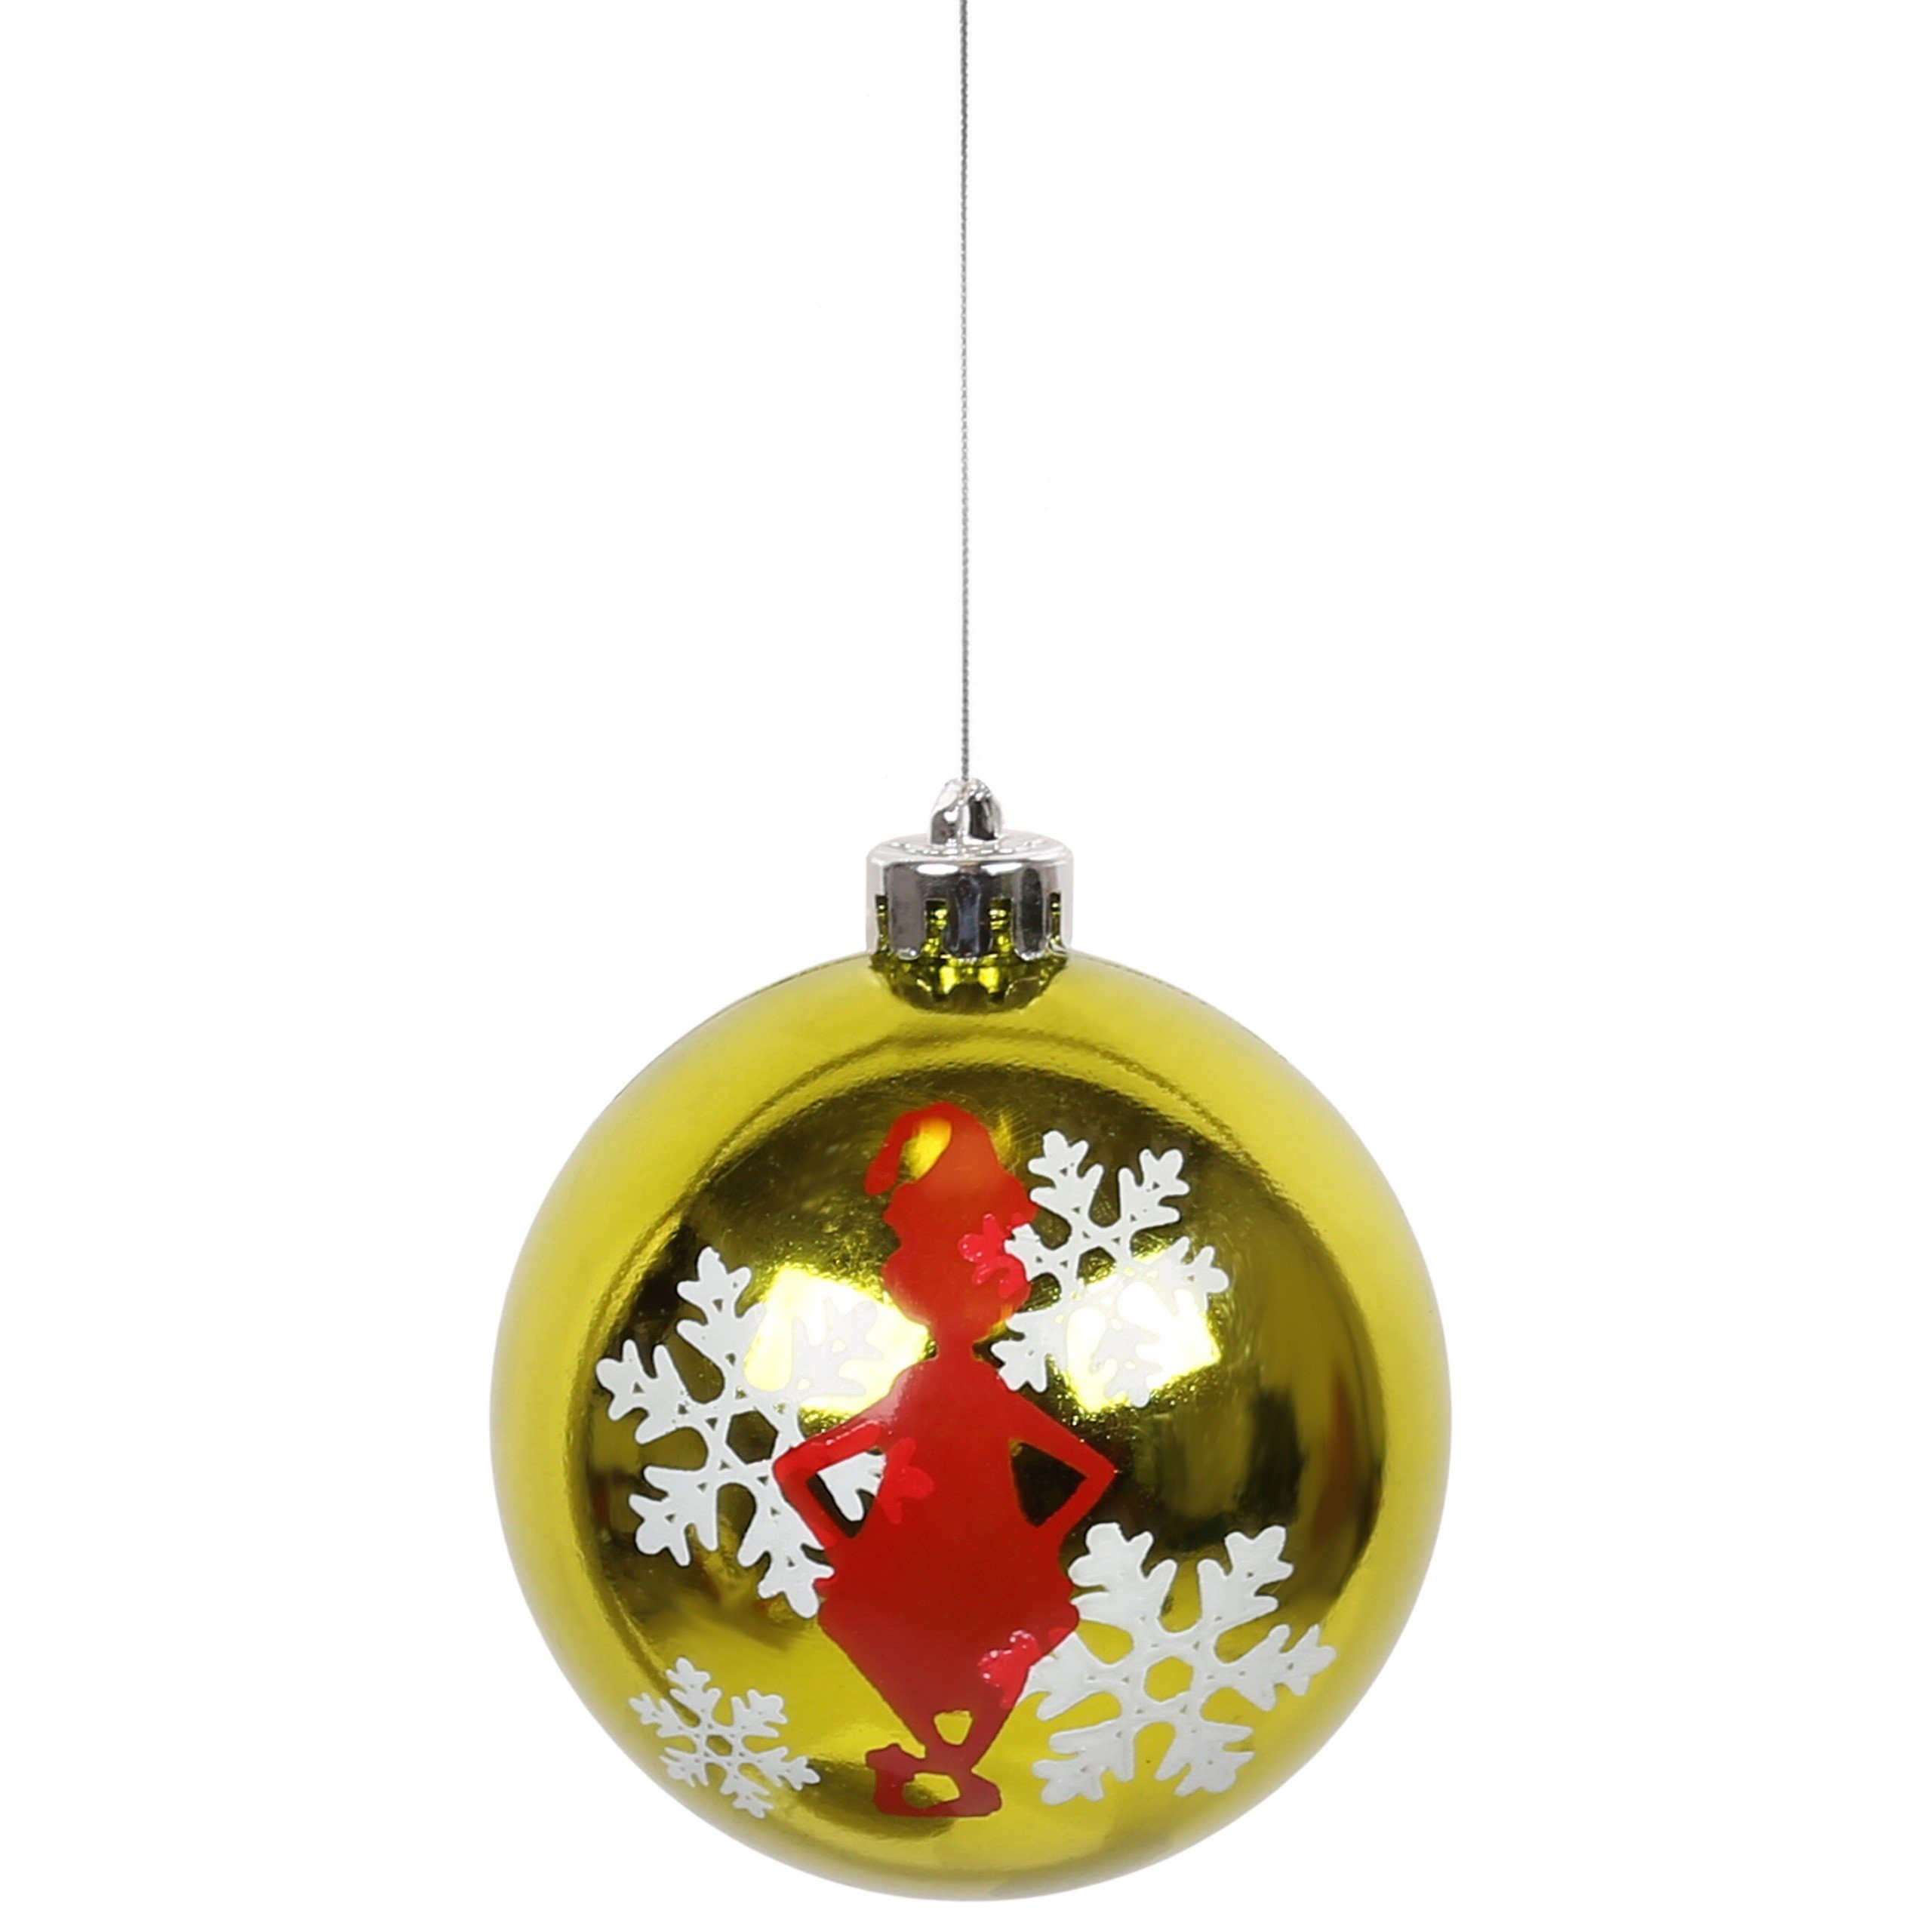 Stück Der Grinch Sarcia.eu aus Weihnachtskugelset, 25 Weihnachtsbaumkugel Kunststoff